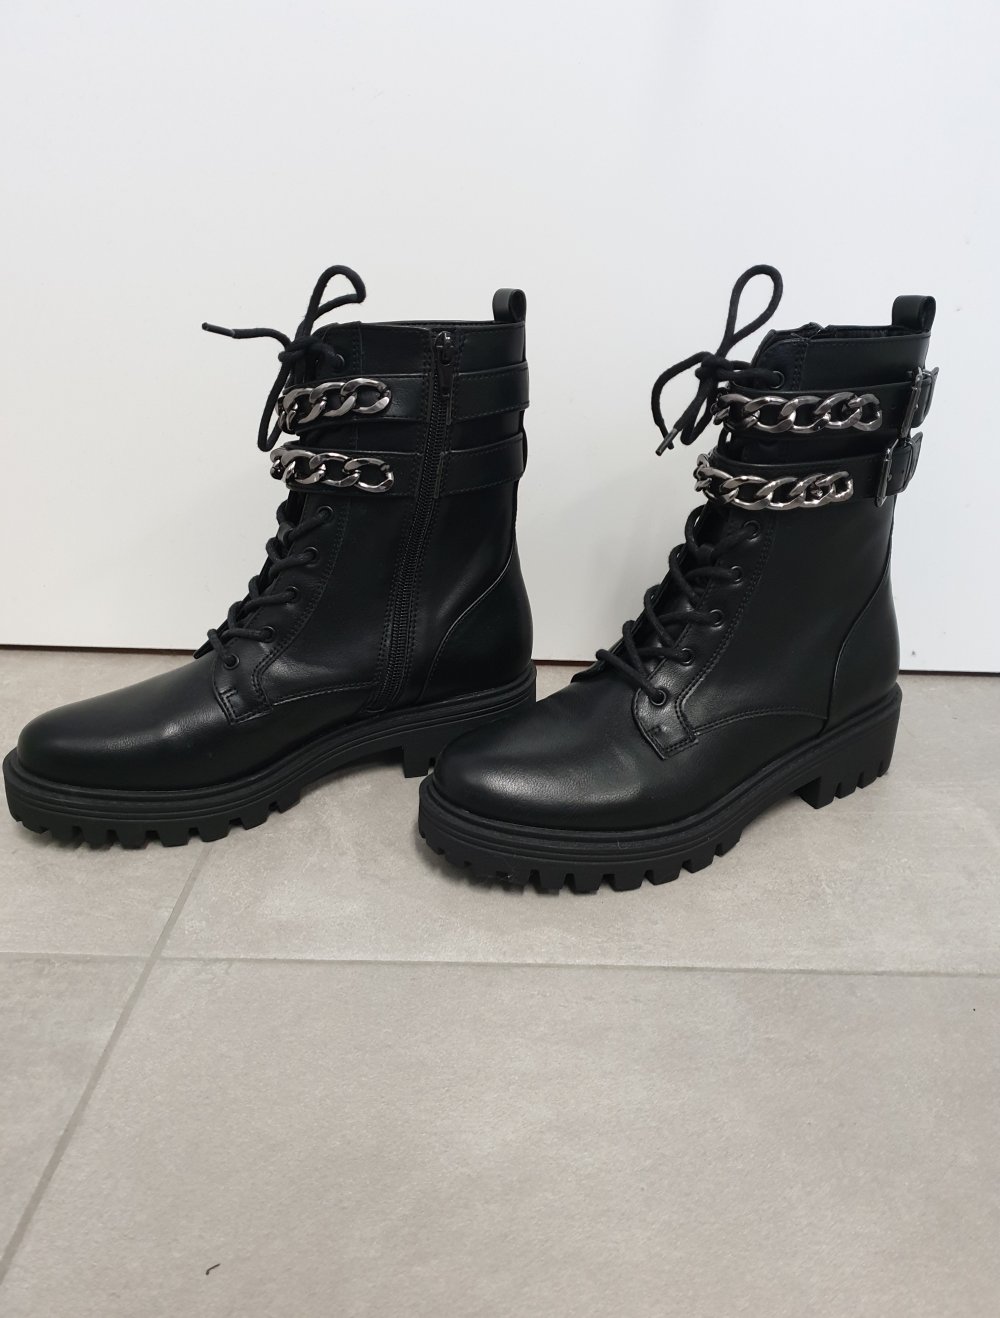 Neue schwarze Boots / Stiefeletten mit Ketten von Catwalk (Deichmann) in 38  :: Kleiderkorb.ch